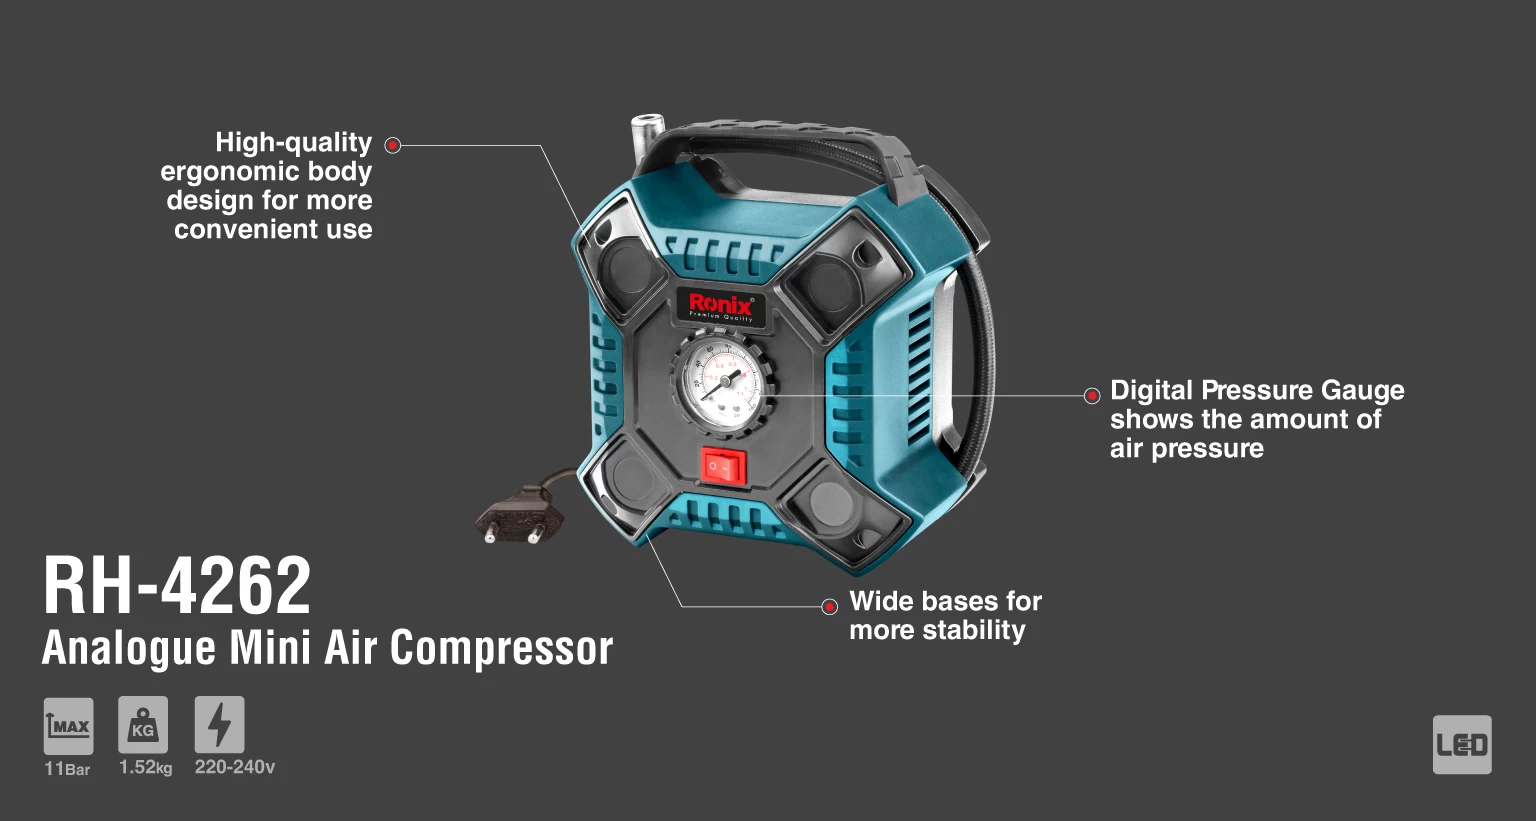 Analogue Mini Air Compressor, 11Bar, AC 220V_details